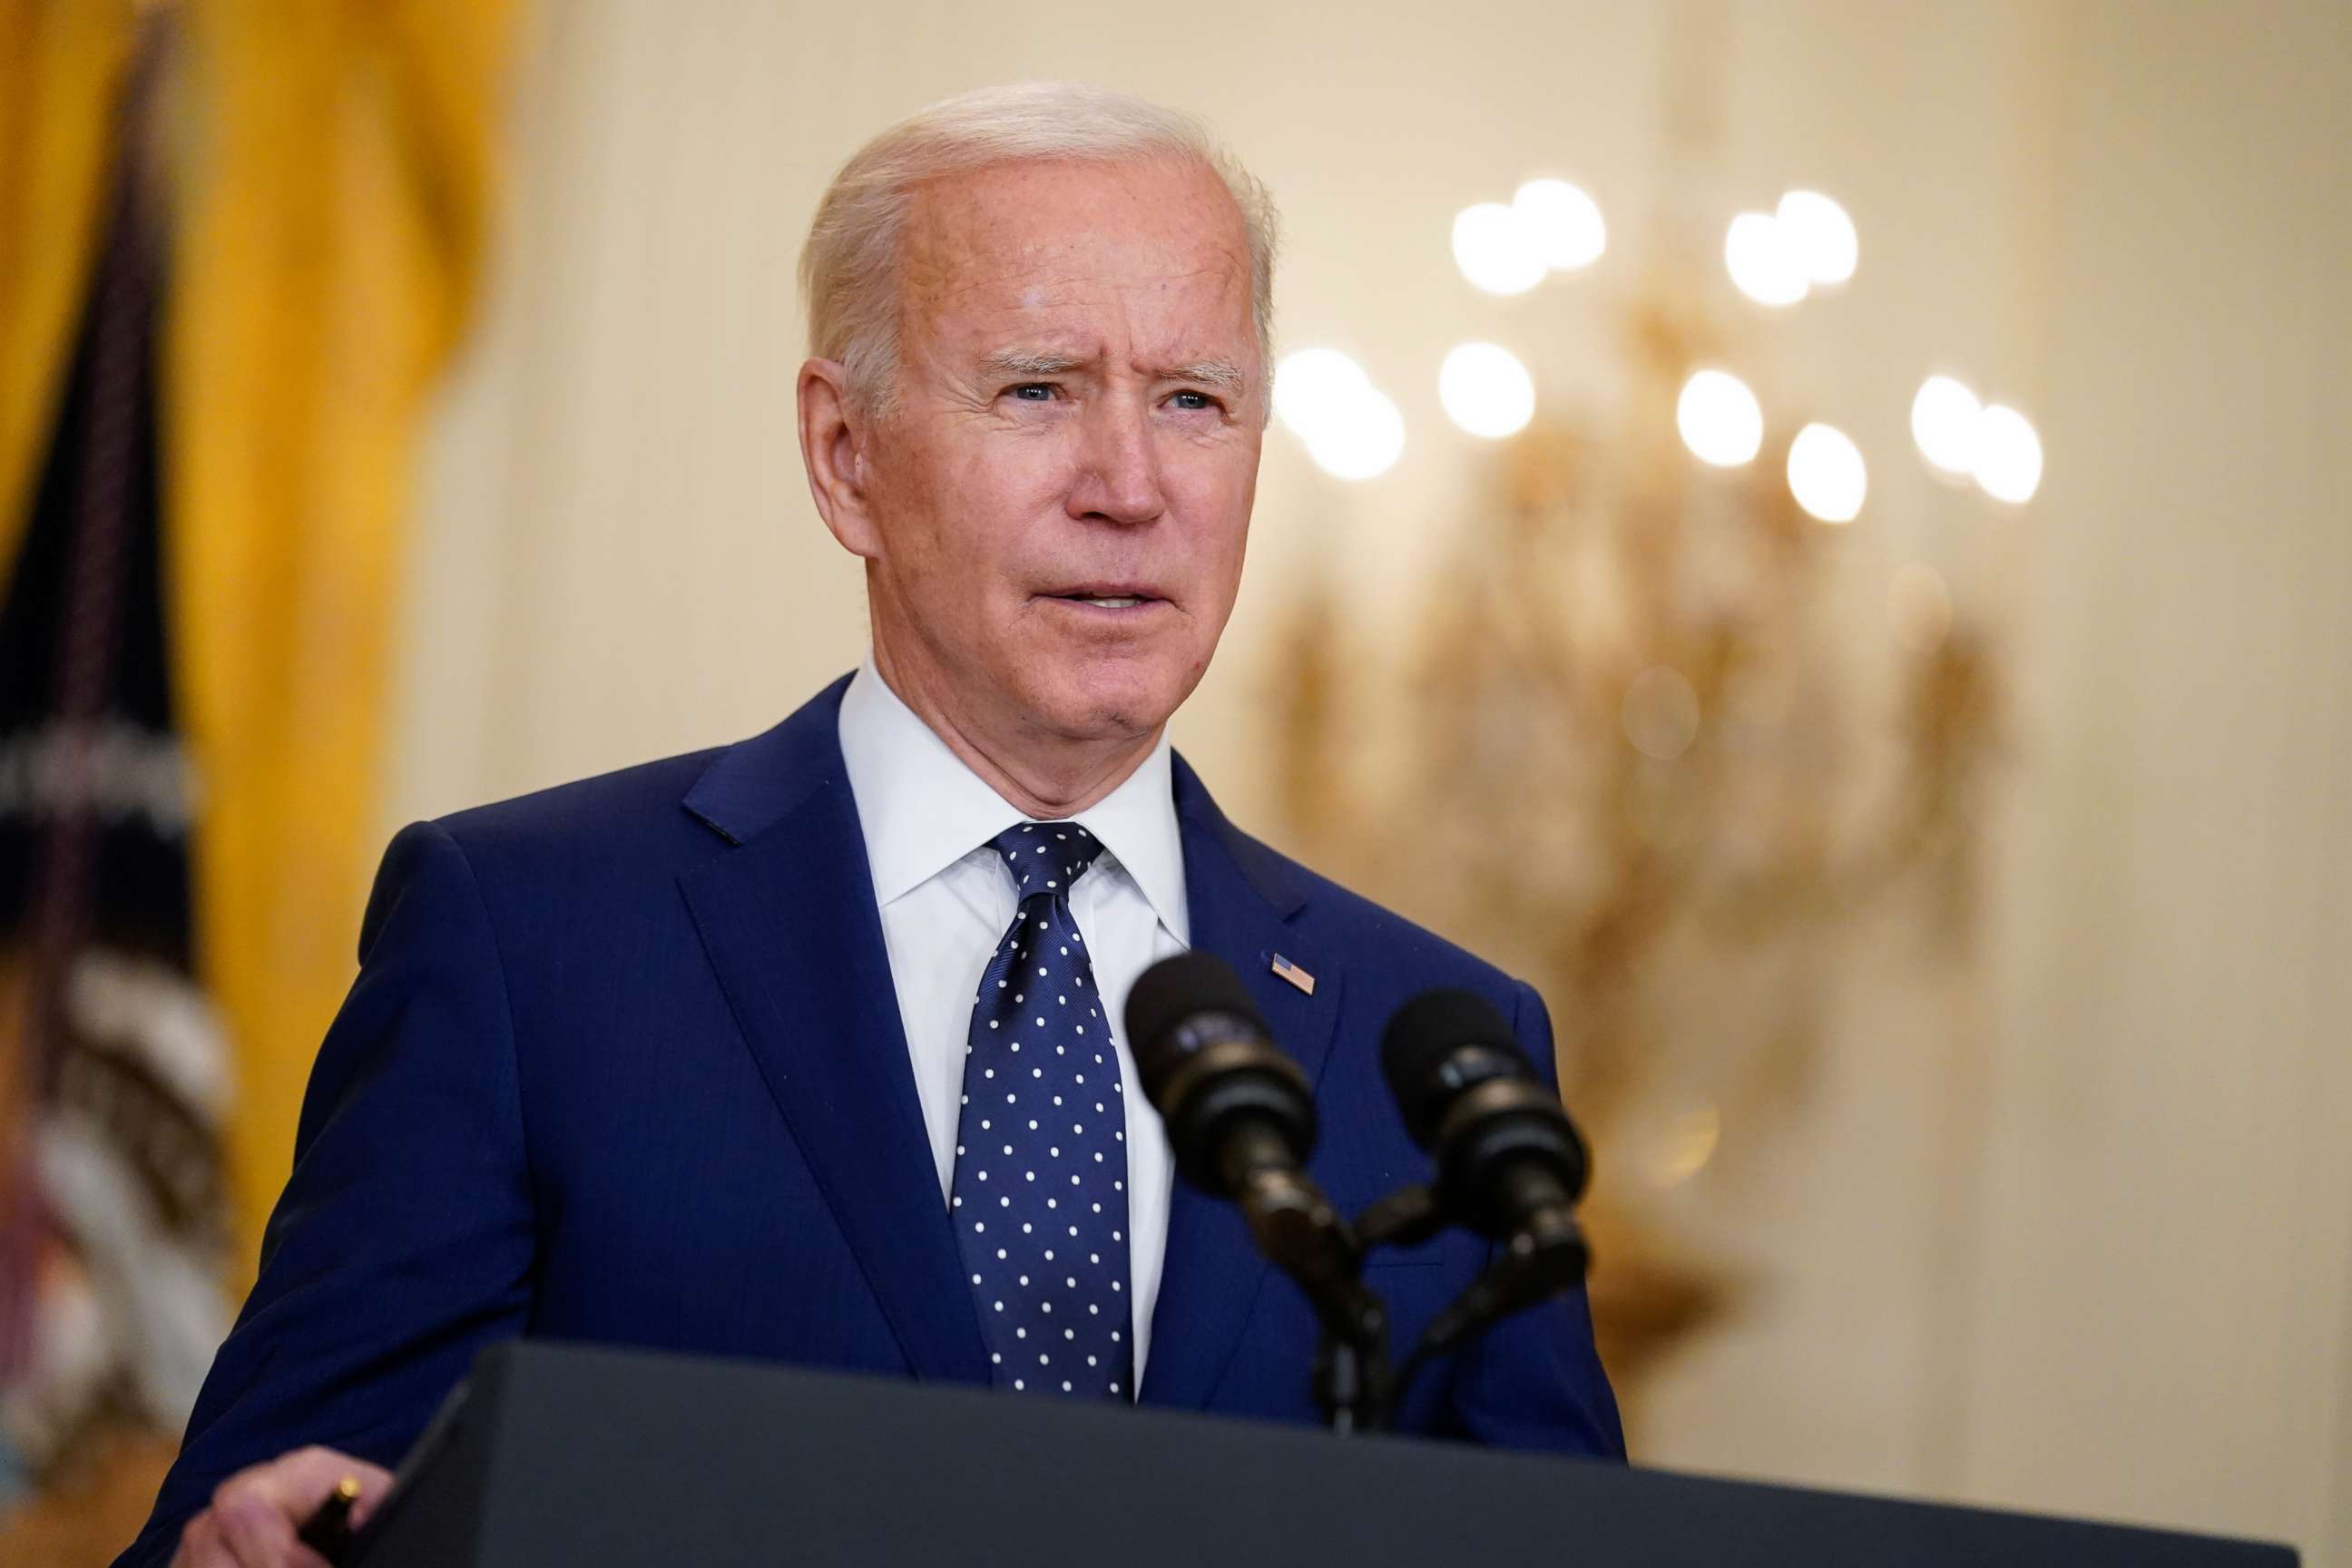 PHOTO: President Joe Biden speaks in the East Room of the White House in Washington, D.C. on April 15, 2021.